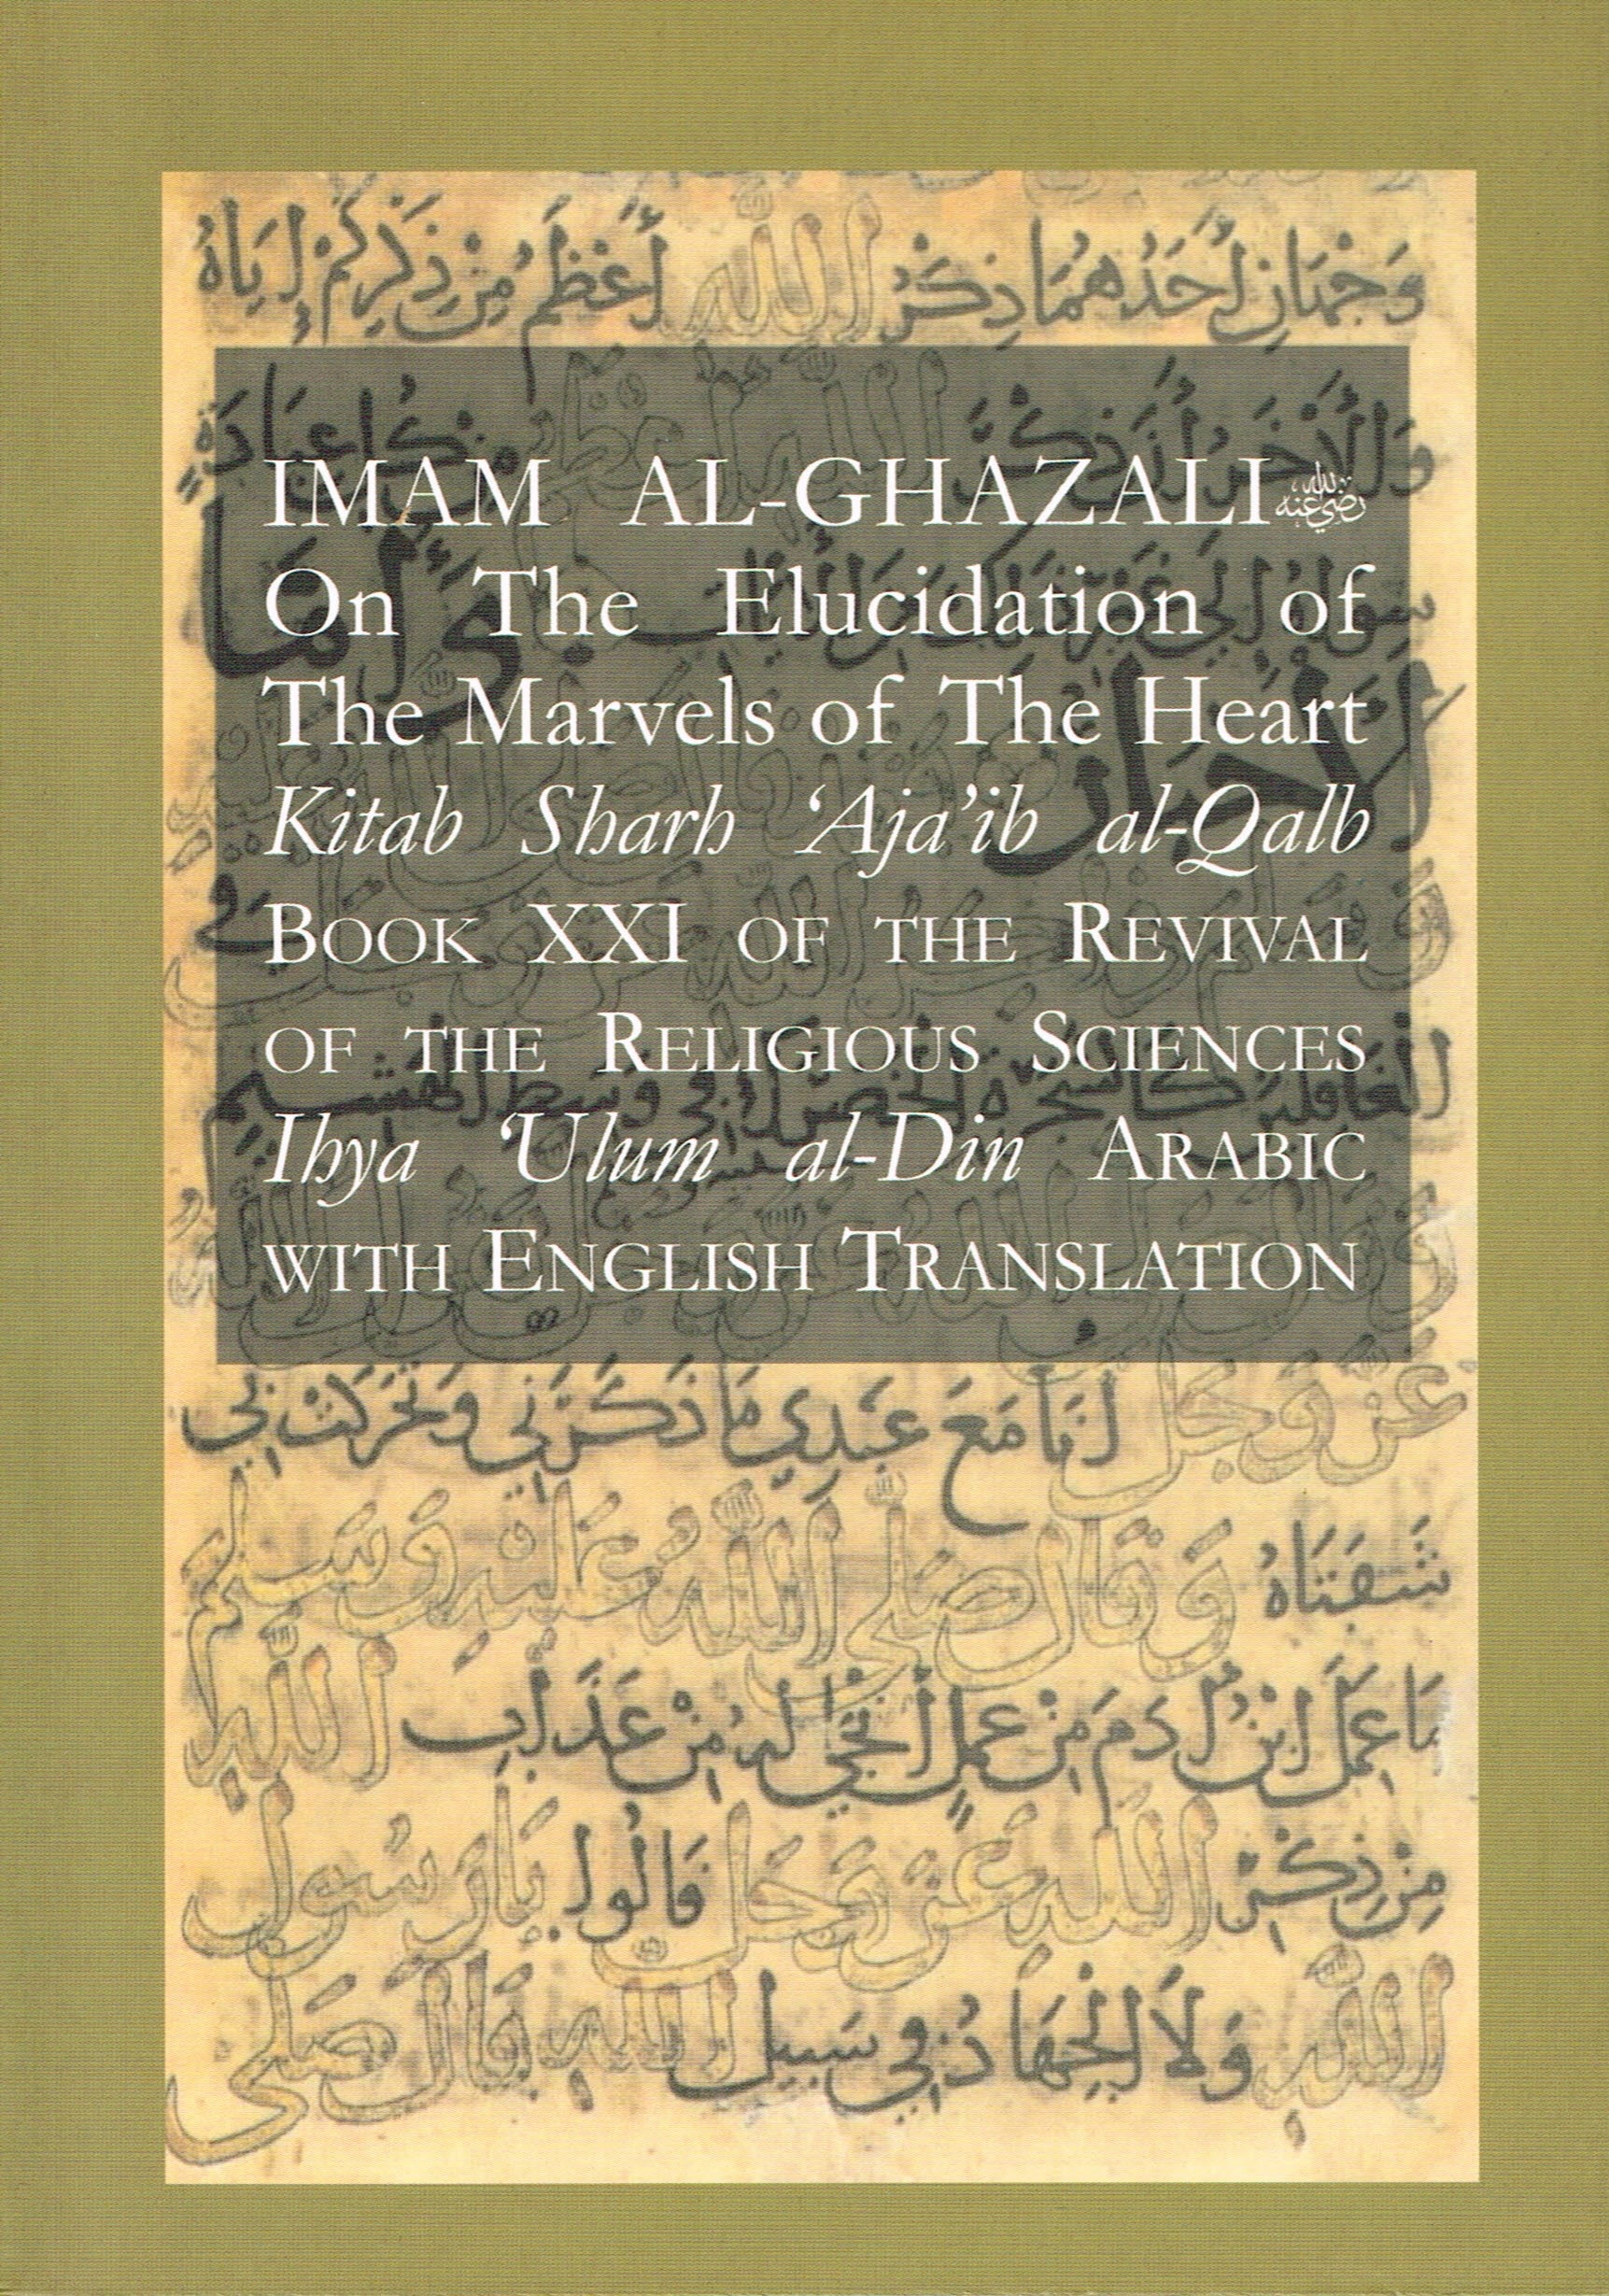 The Marvels of the Heart Imam Al-Ghazali